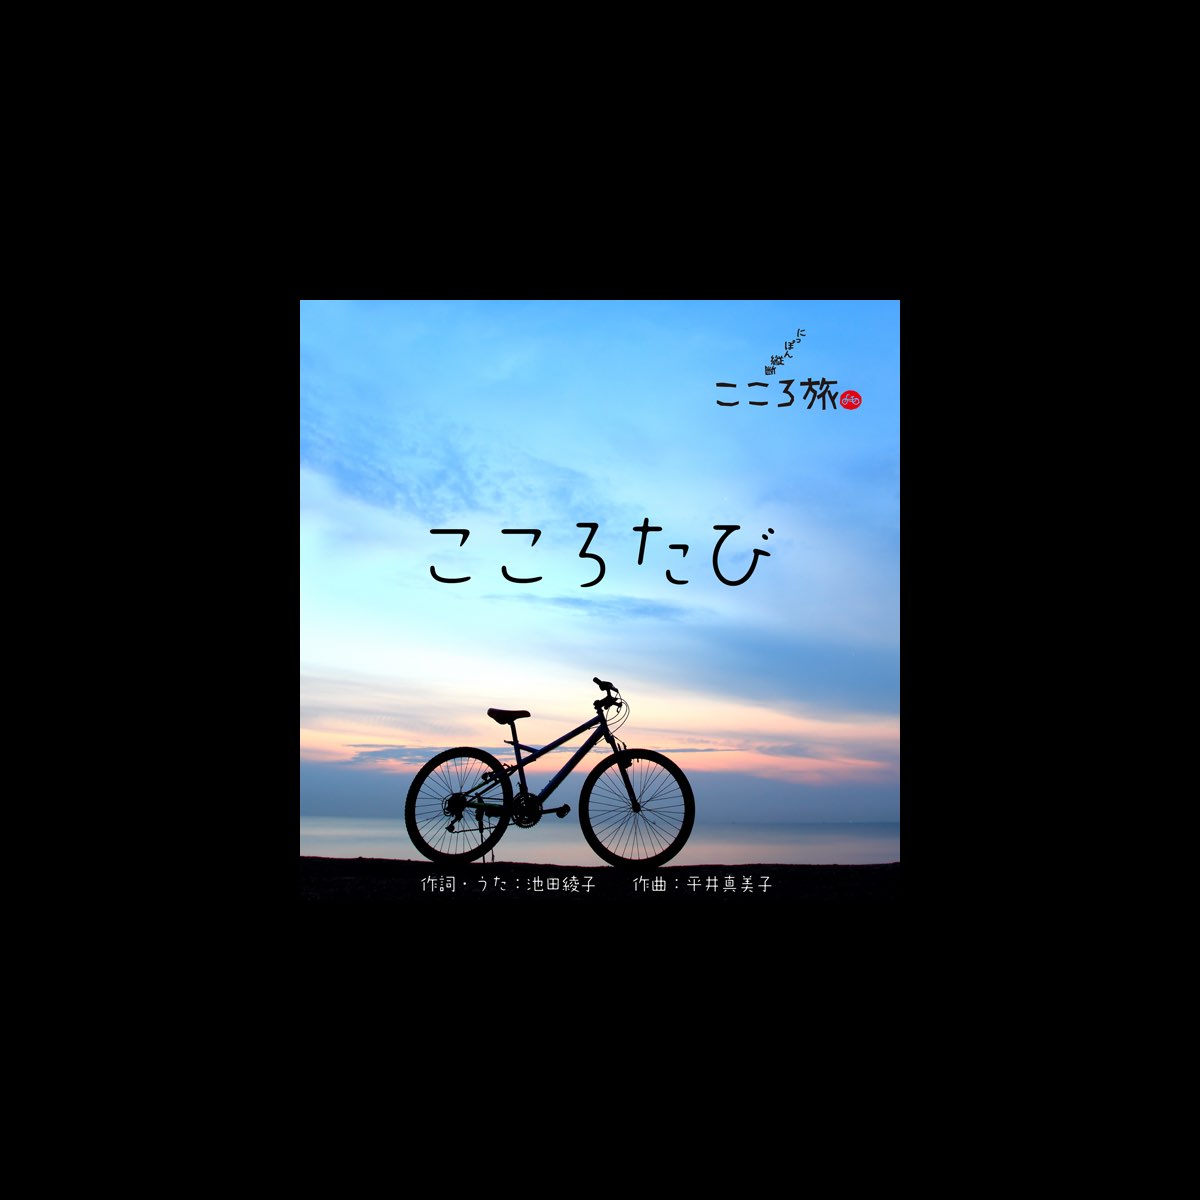 こころたび Feat Nhk にっぽん縦断こころ旅 Single By Ayako Ikeda On Apple Music